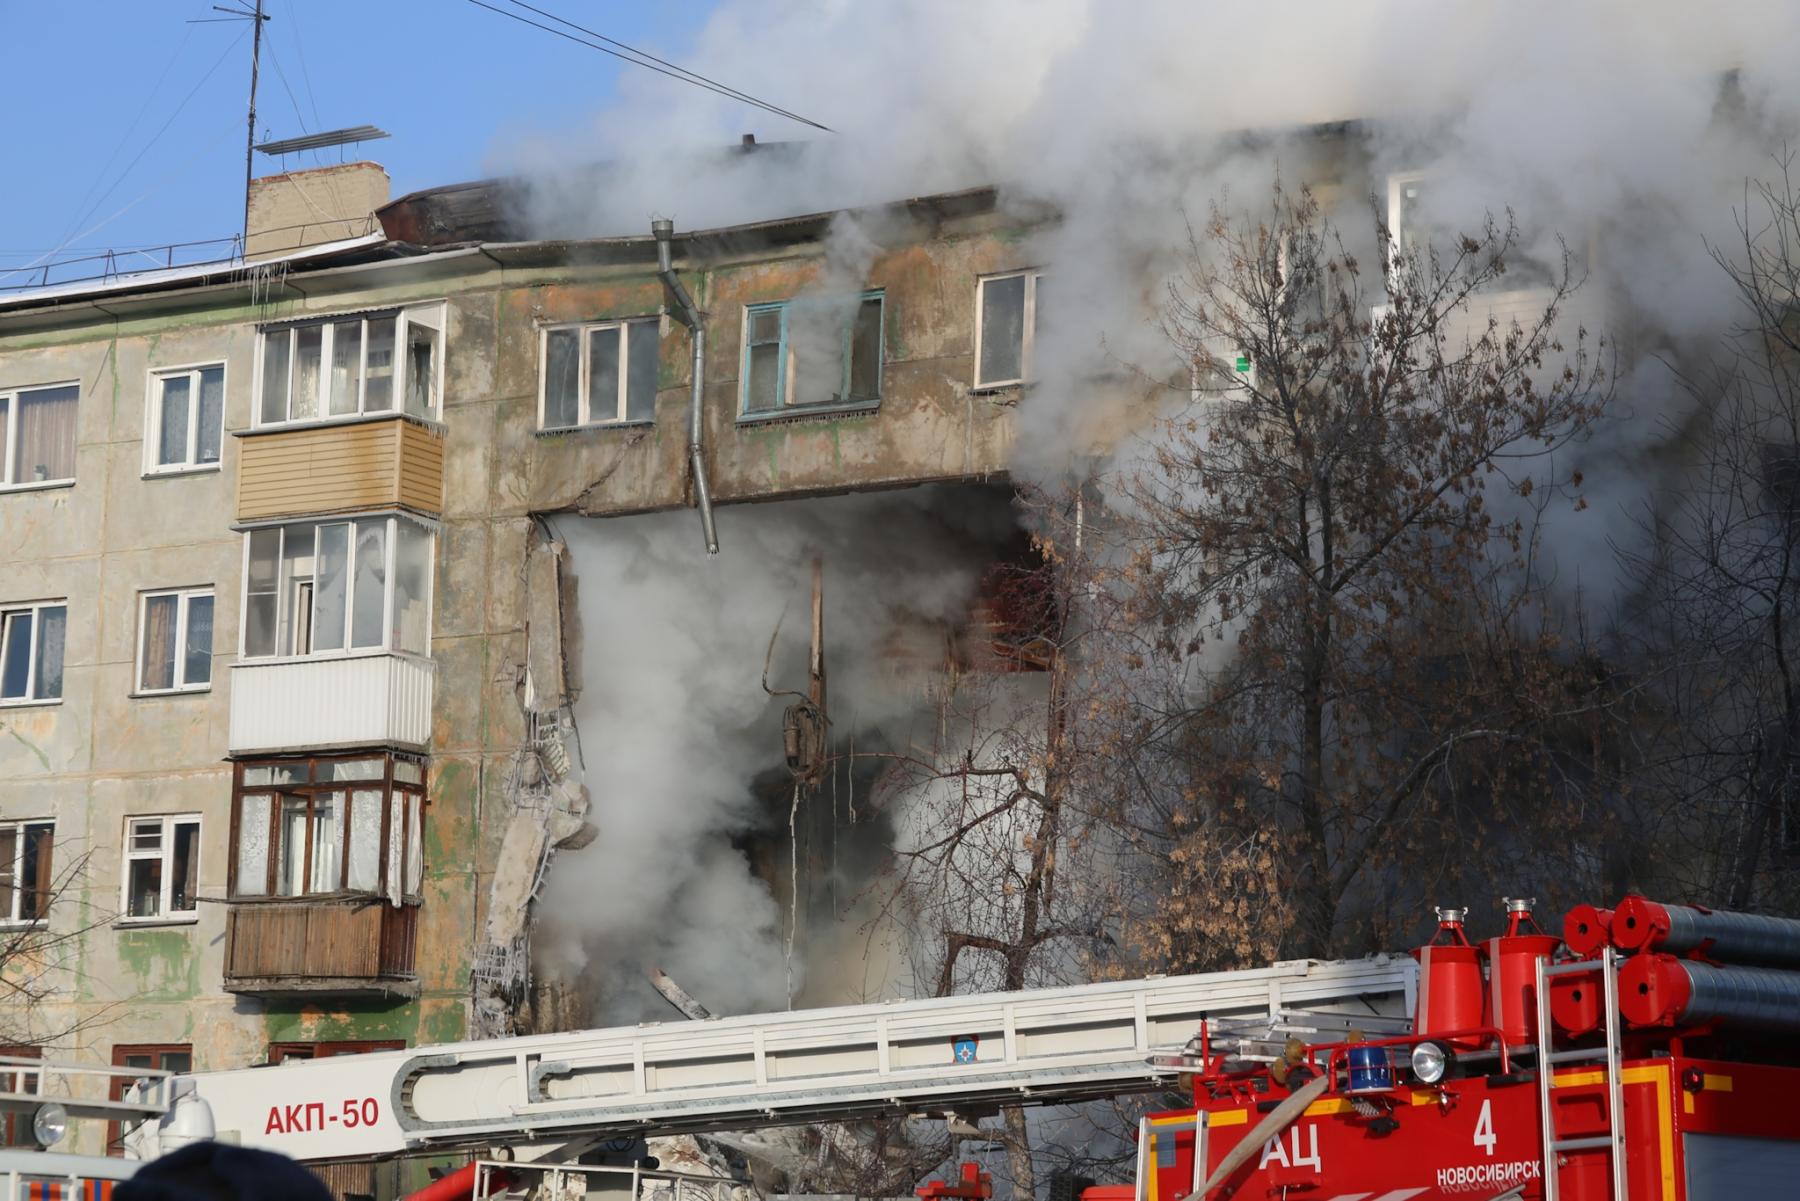 Фото Восстановлению не подлежит: в Новосибирске из-за взрыва газа обрушились подъезды пятиэтажки 21